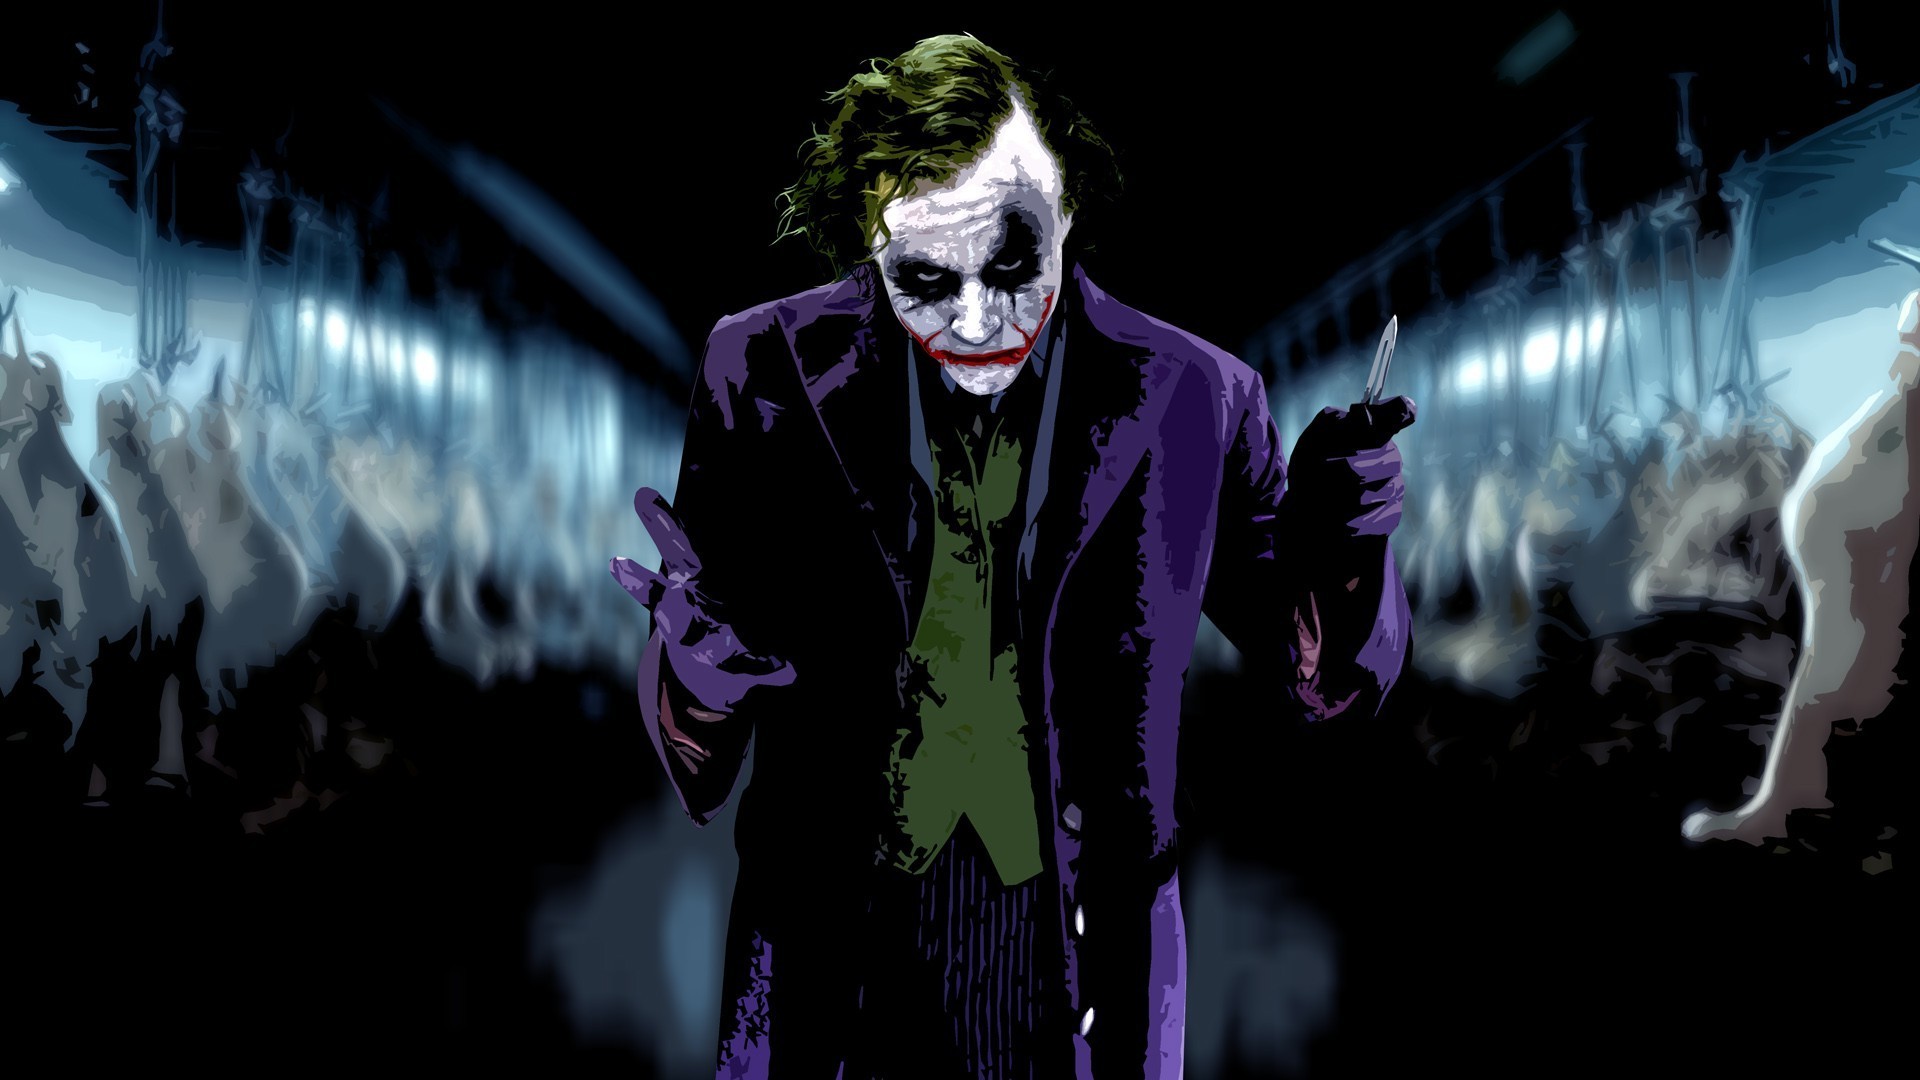 Grand Theft Auto - 4k Ultra Hd Joker Wallpaper For Computer , HD Wallpaper & Backgrounds